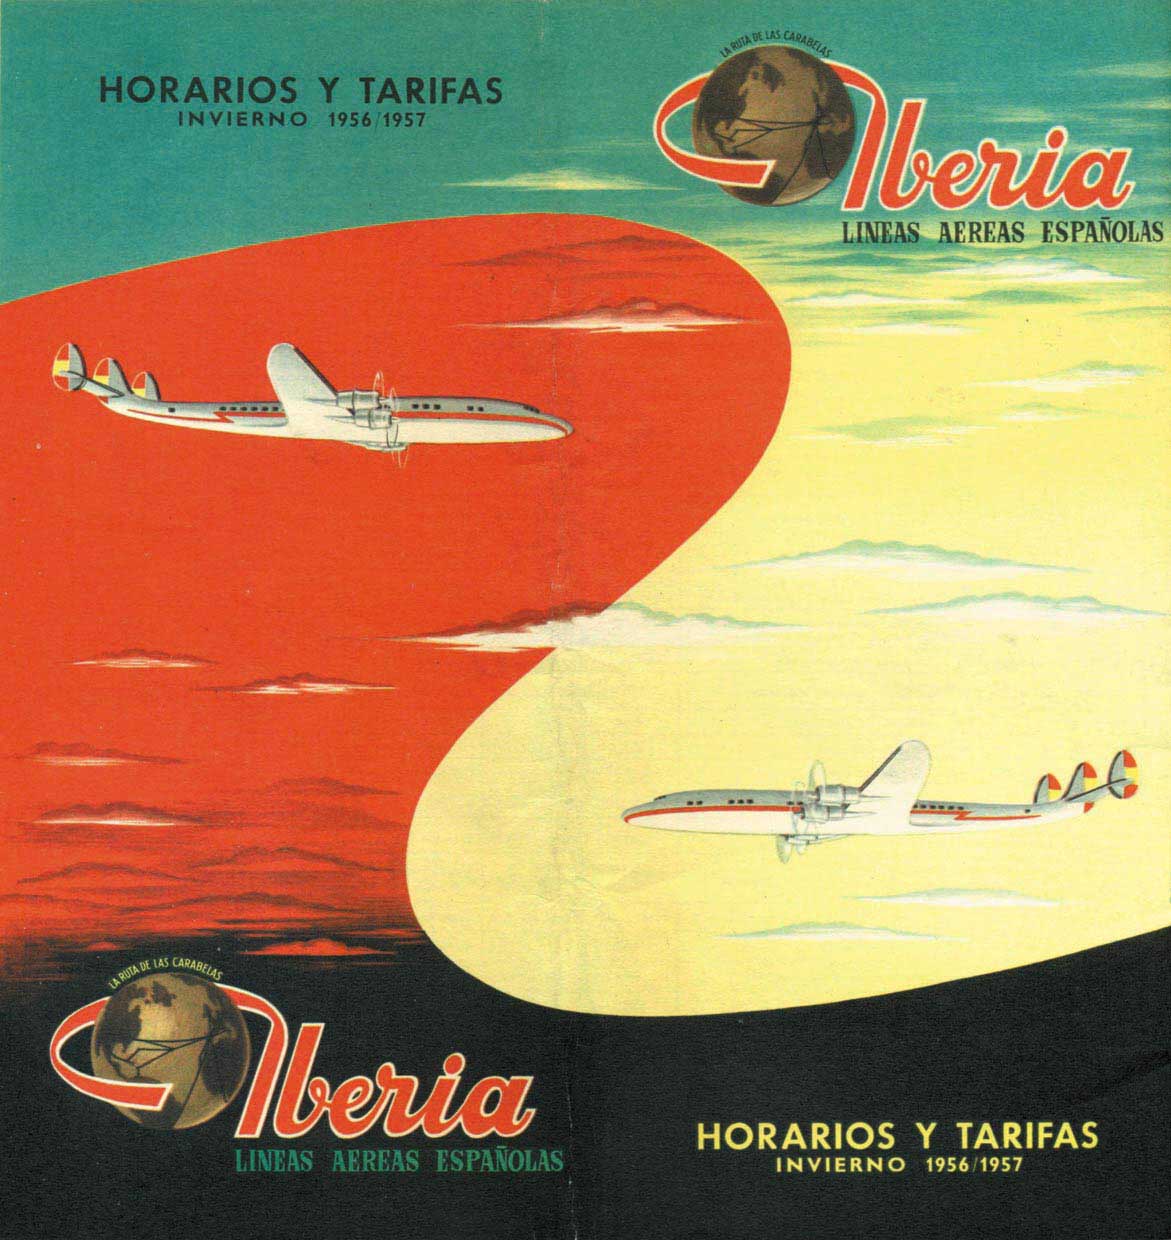 Portada de Tabla de horarios y tarifas de Iberia, de 1956. Colección de Diederik R. Vels Heijn.